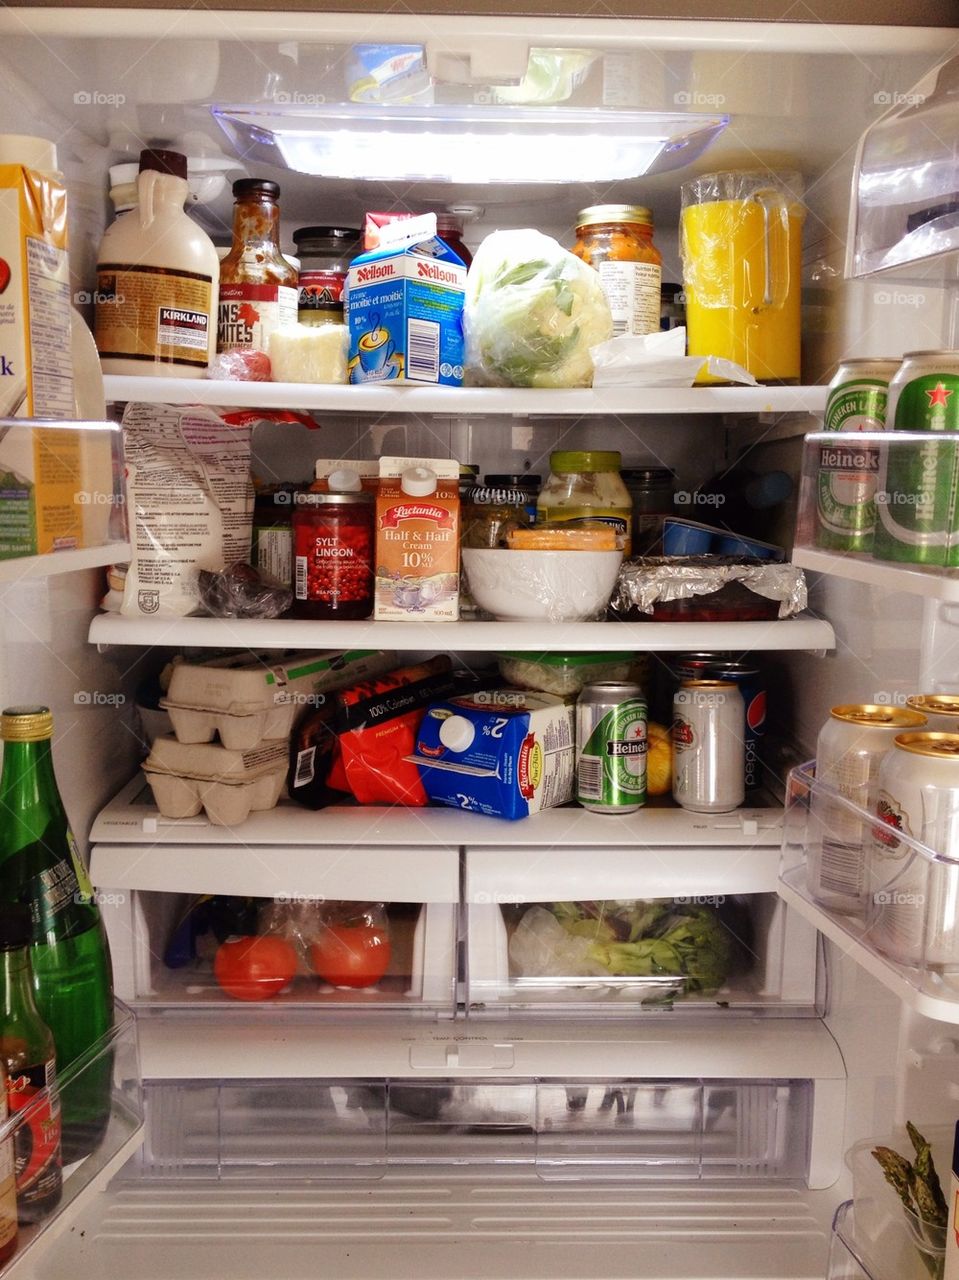 Inside the fridge